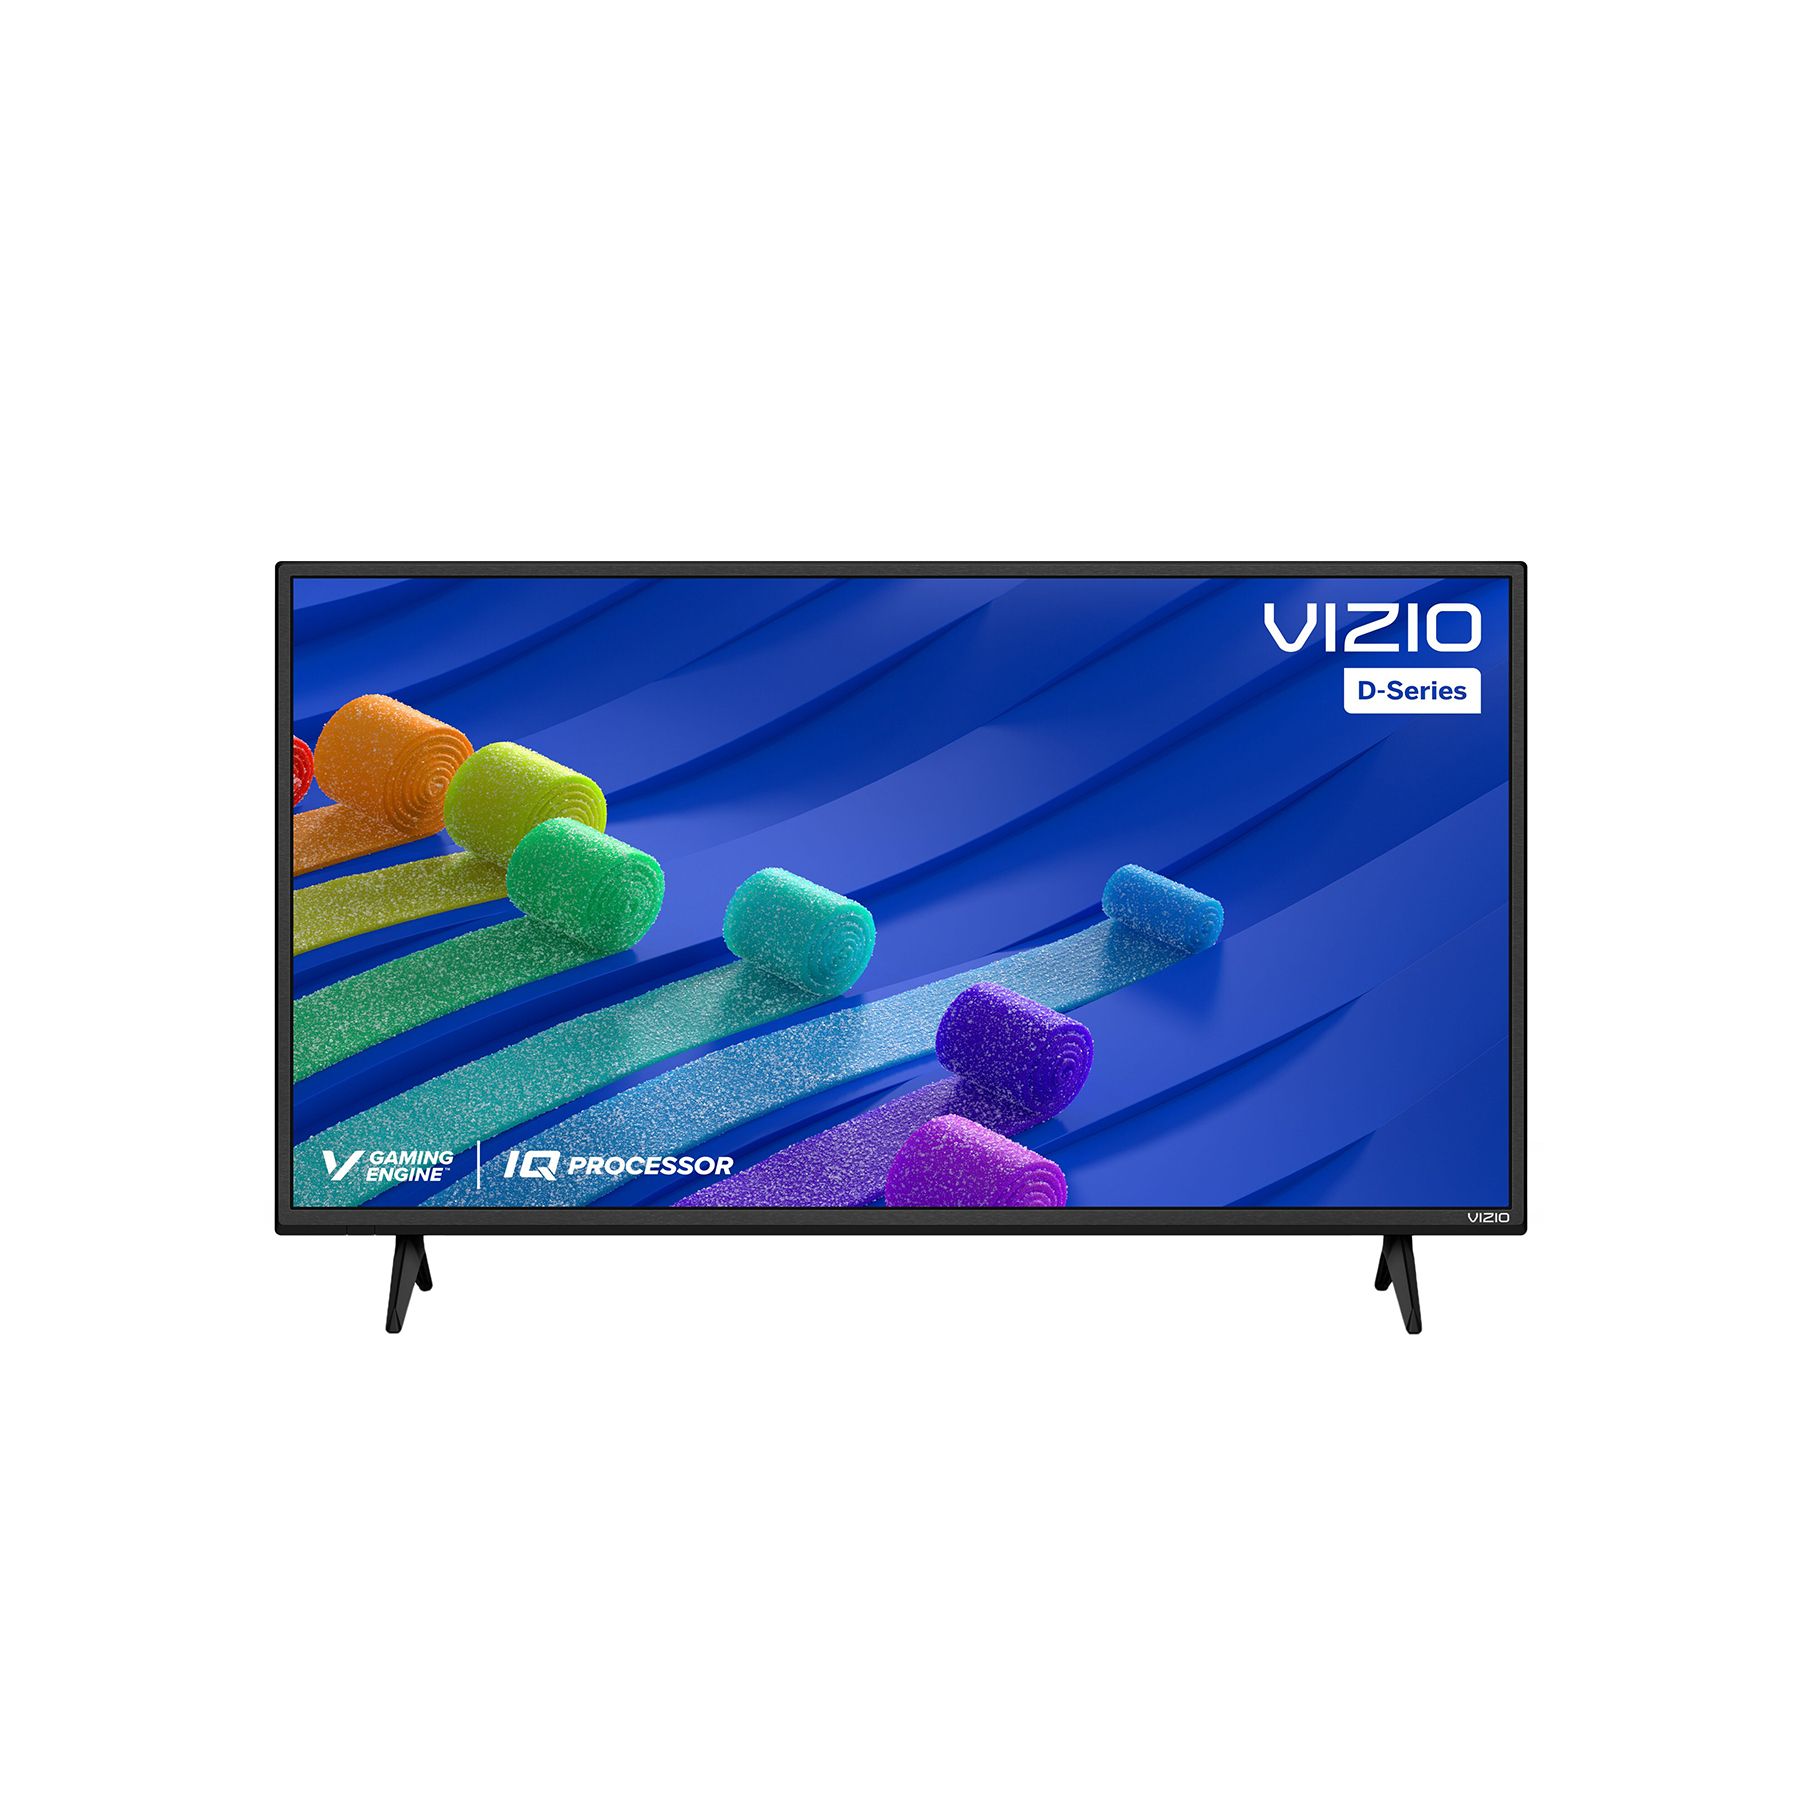 VIZIO 40 D-Series LED 1080p Smart TV - D40f-J09